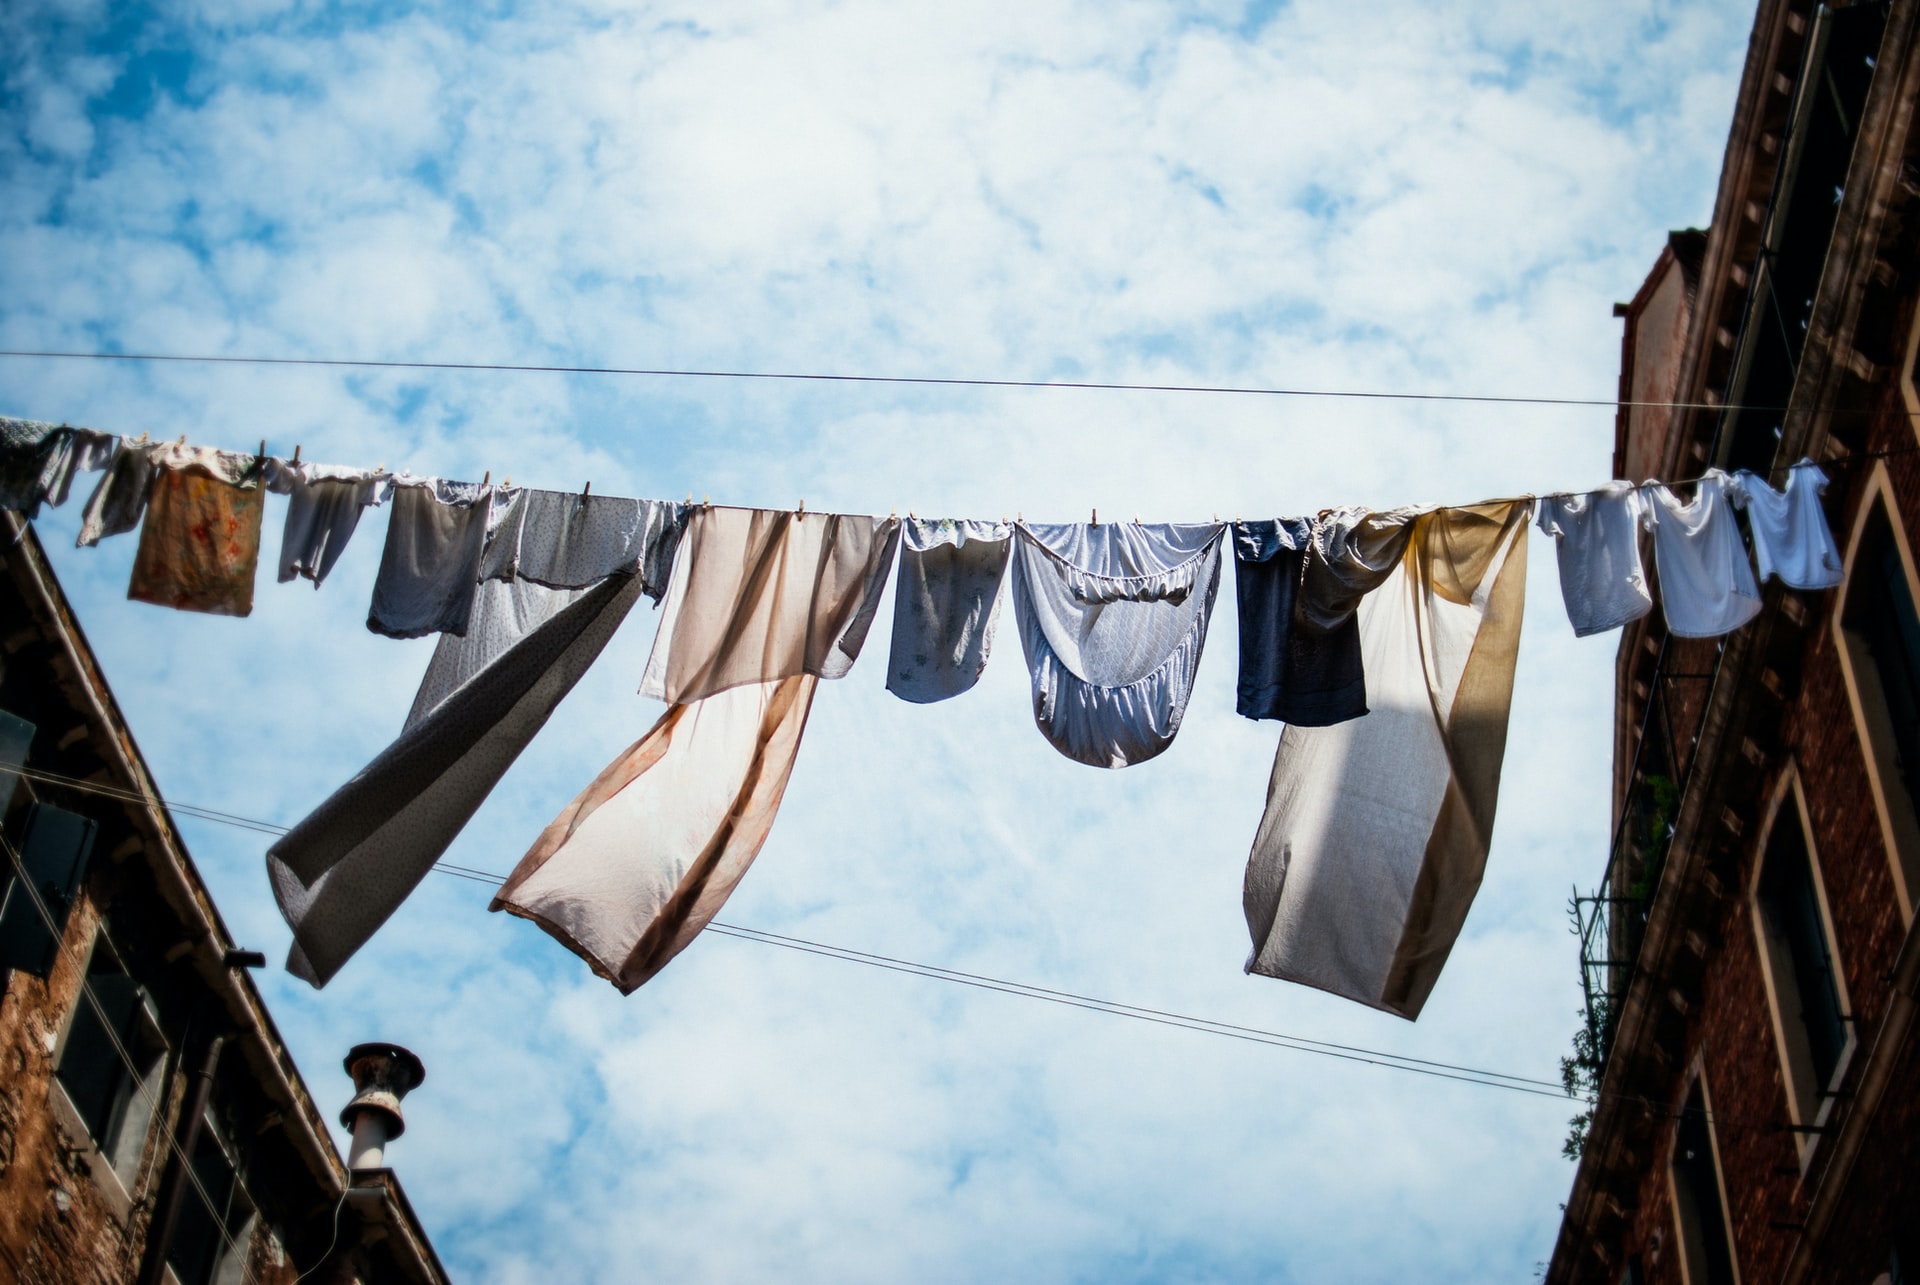 Hygienewaschmittel: sinnvoll, notwendig oder überflüssig? - Auf dem Bild ist eine Wäscheleihe mit Klamotten zu sehen.